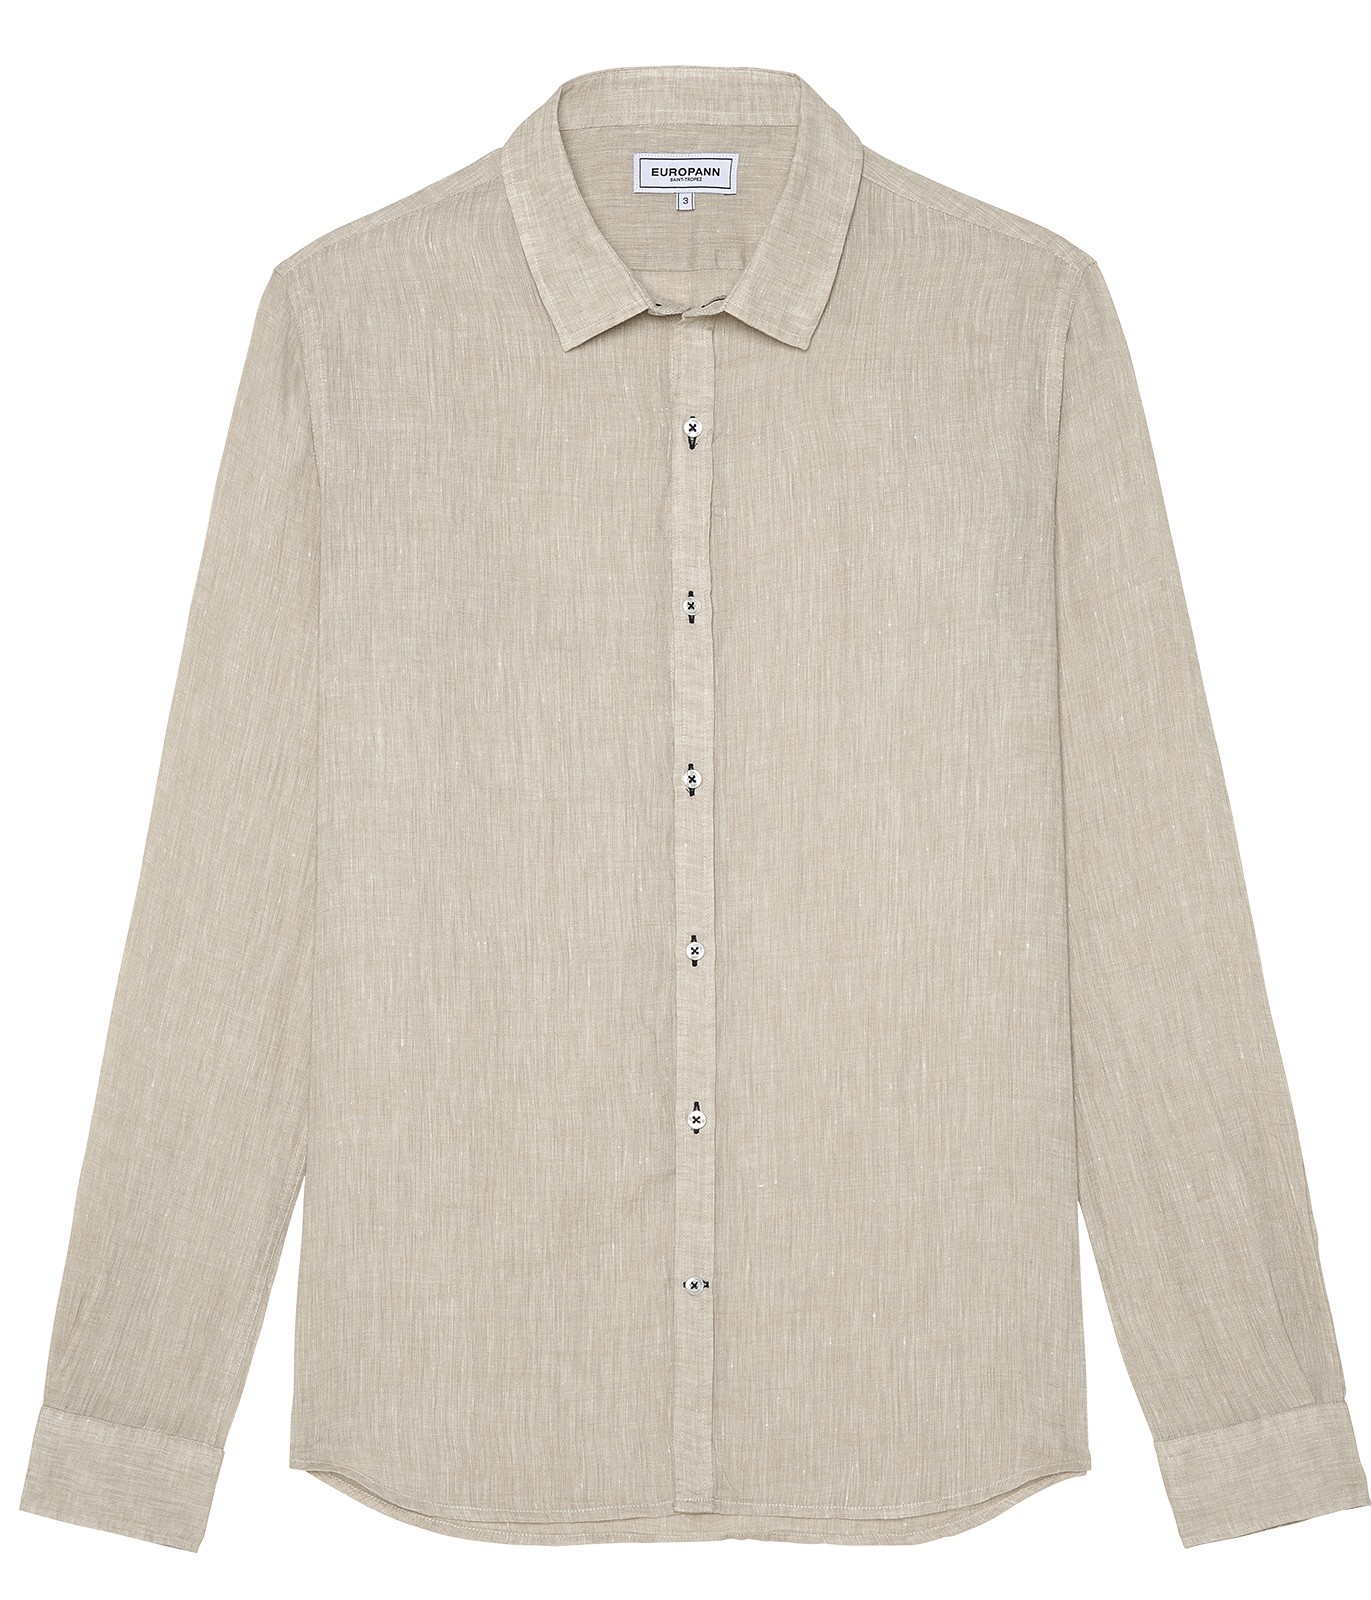 Plain beige color long sleeves shirt for men | Quality brand Europann